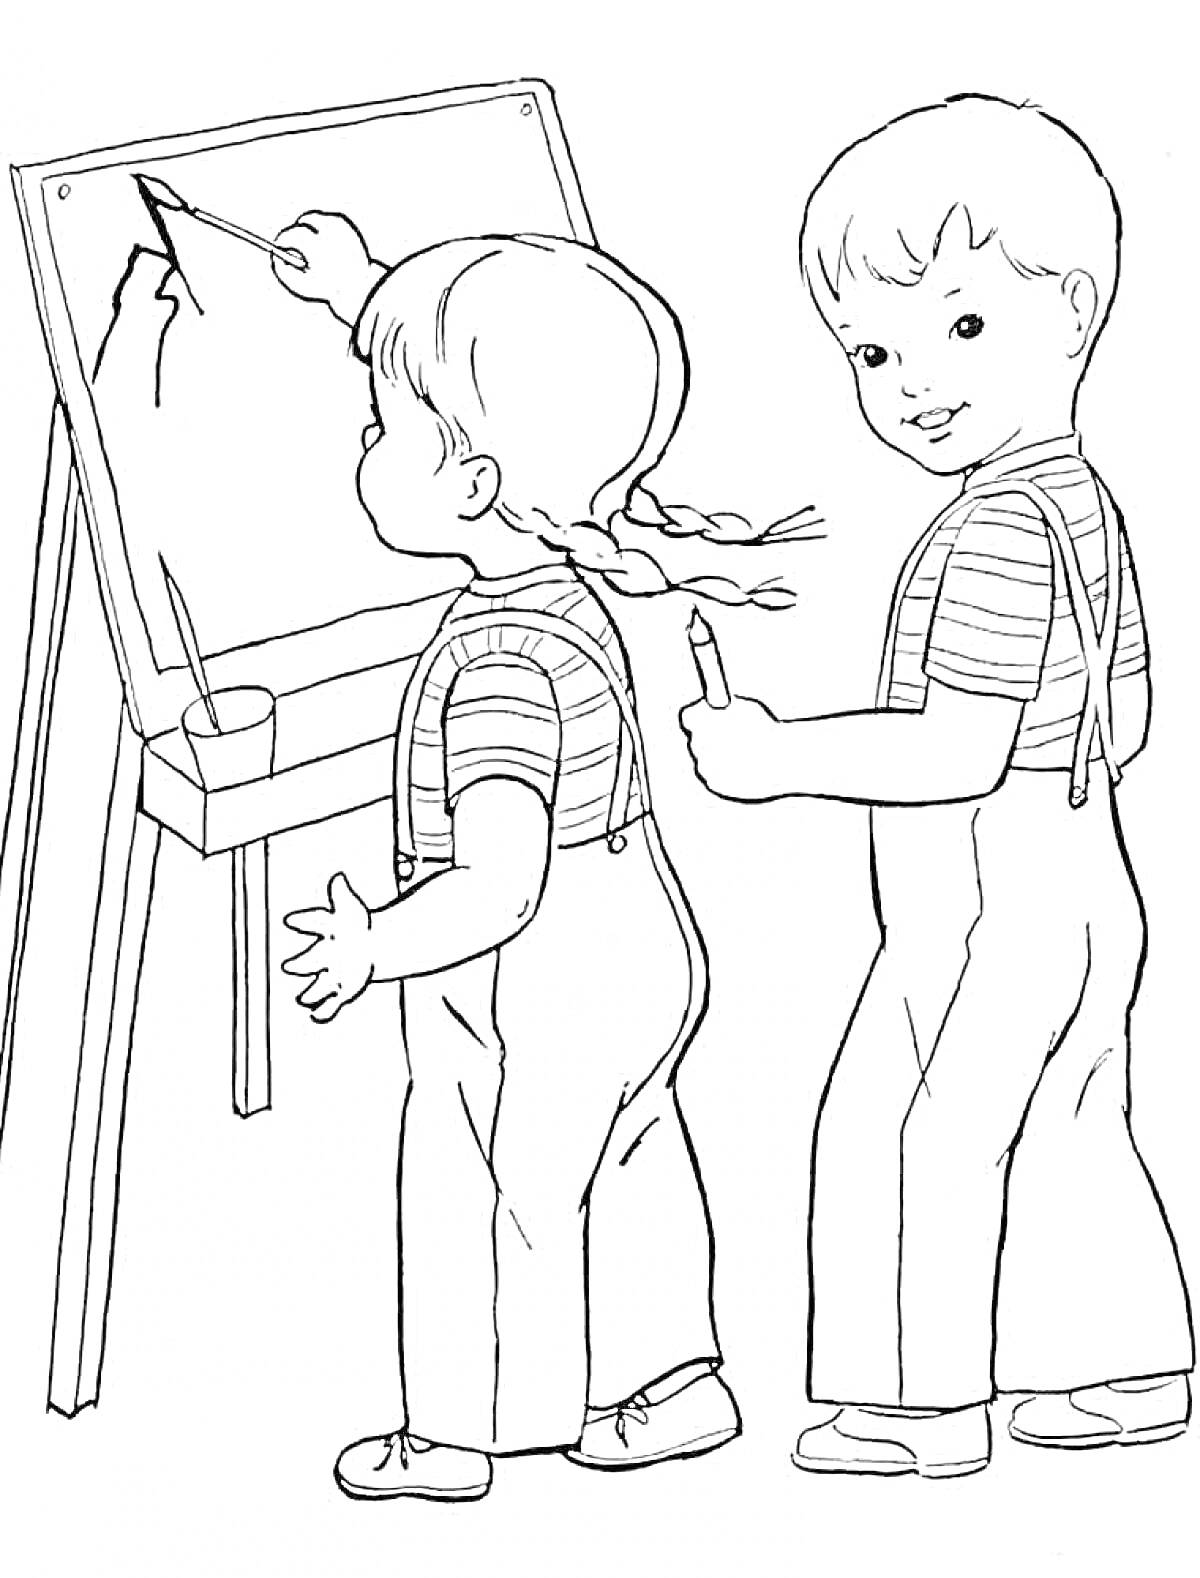 Двое детей рисуют на доске в школе. Девочка и мальчик с карандашами, мольберт с рисунком, стаканчик для карандашей.